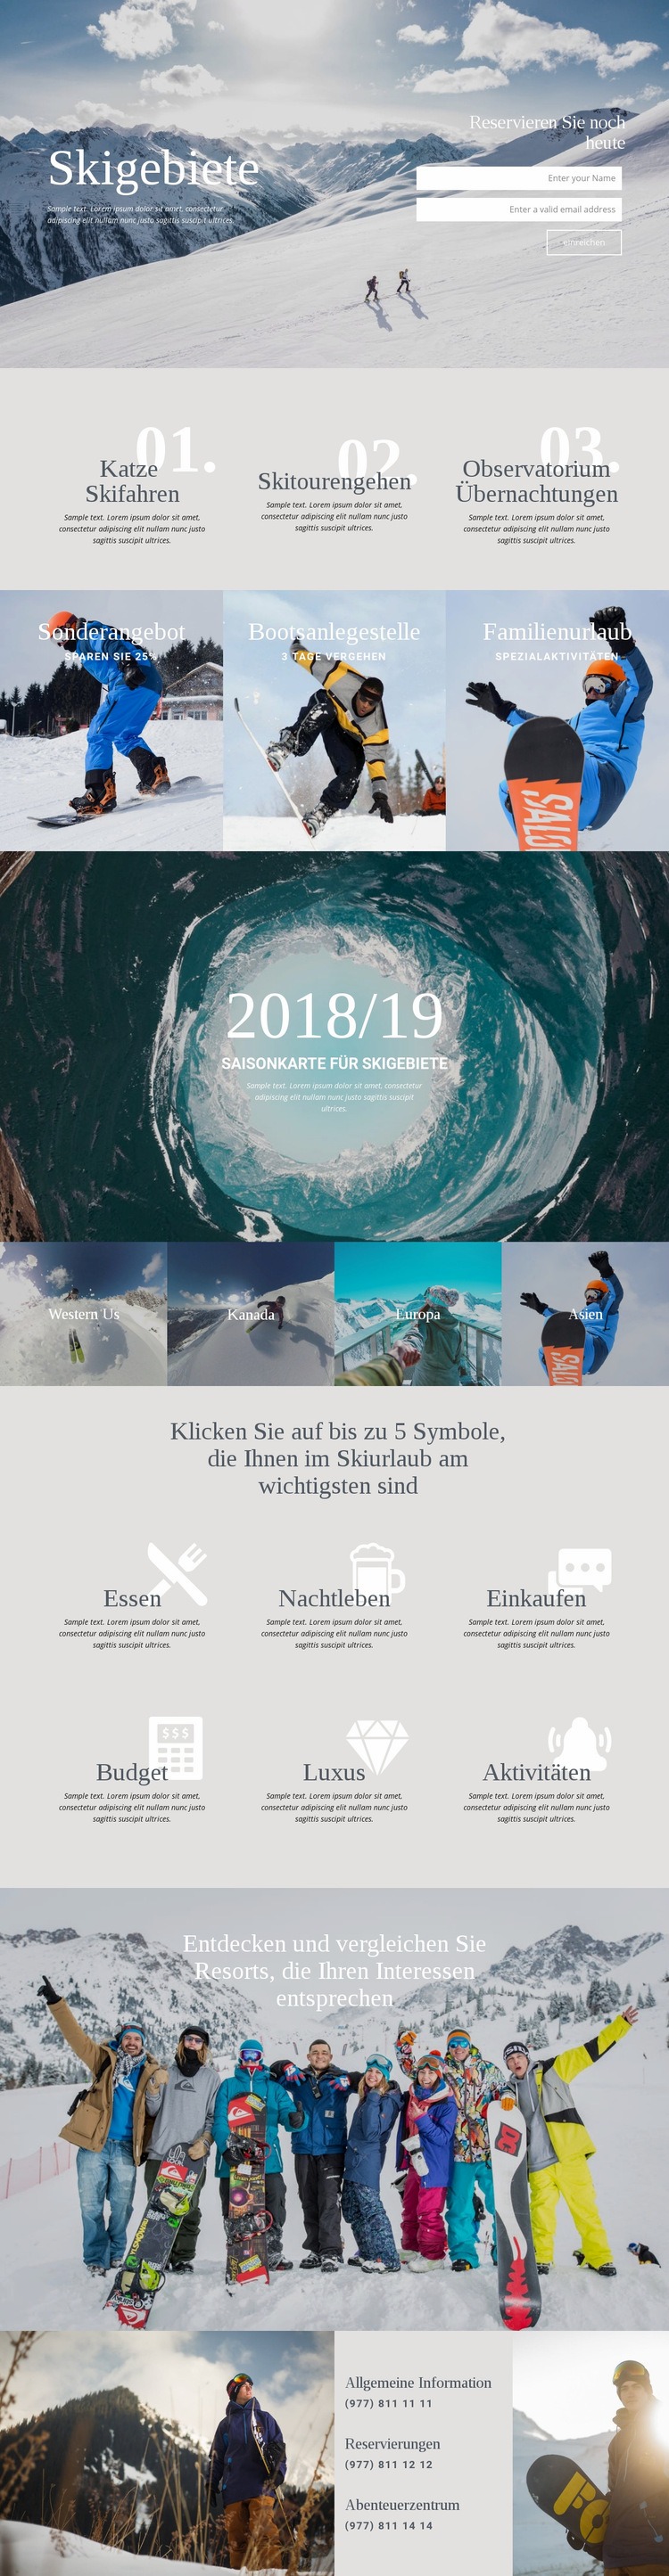 Skigebiete Website Builder-Vorlagen